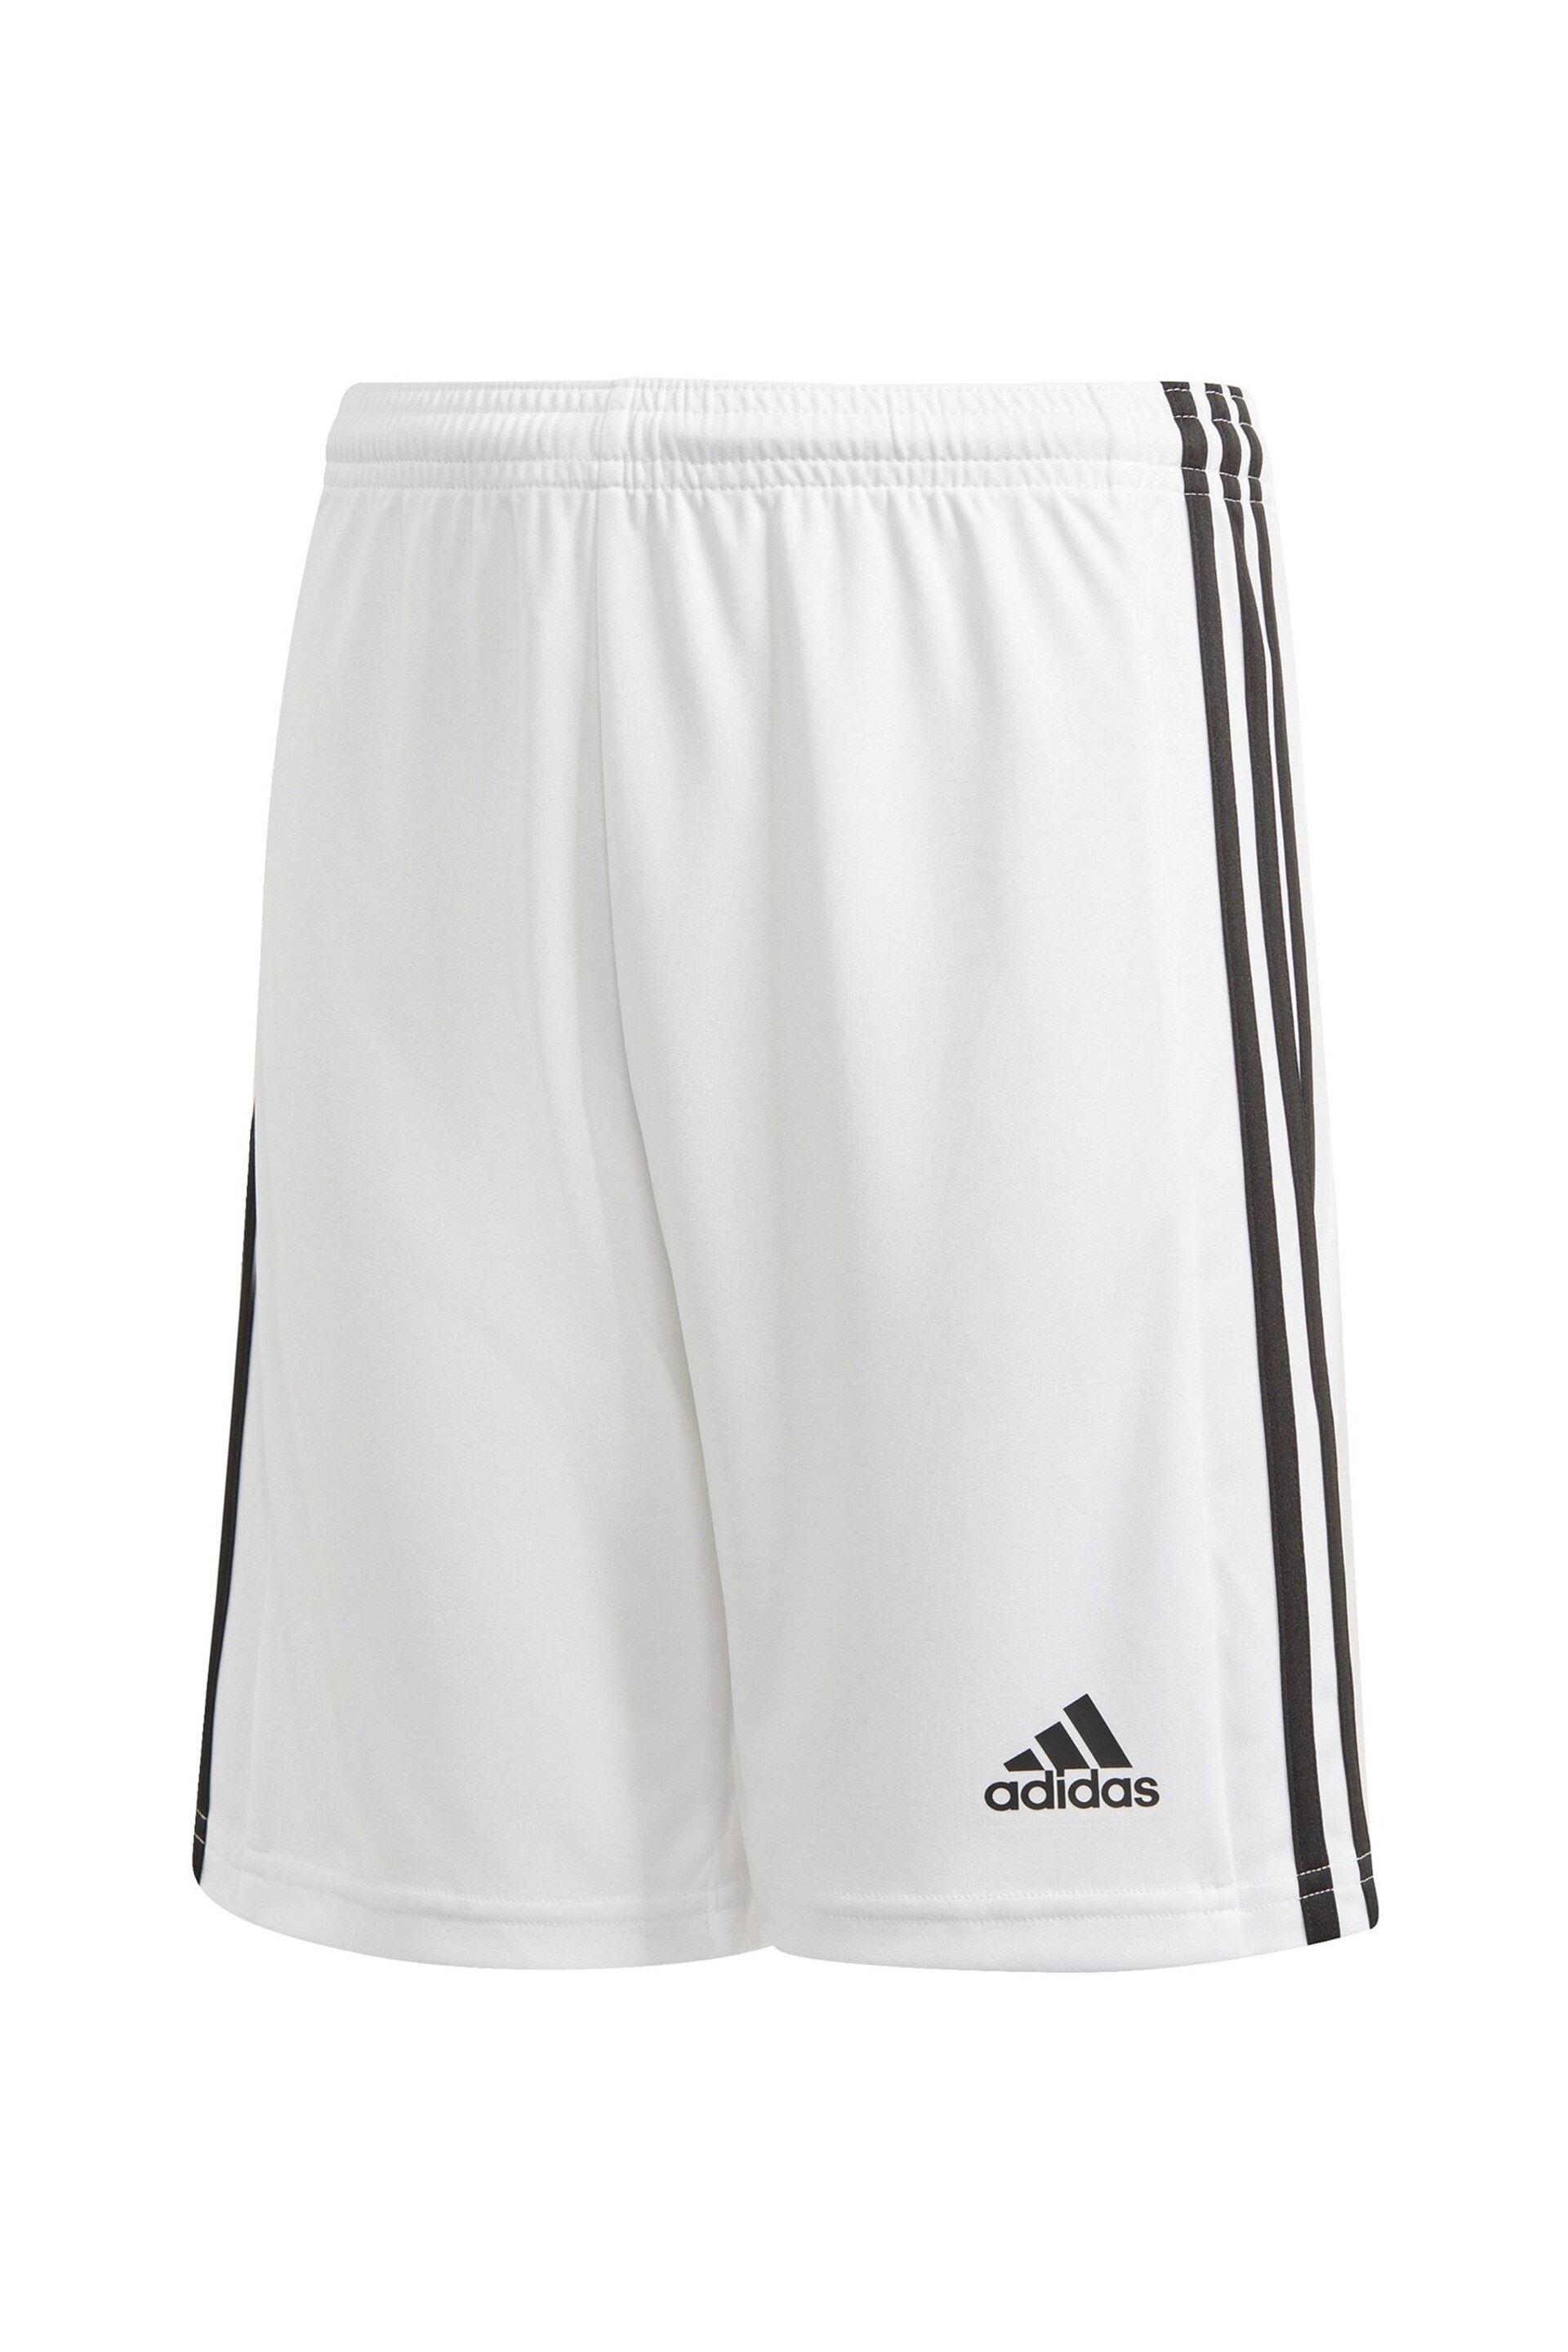 adidas White Squadra 21 Shorts - Image 6 of 10